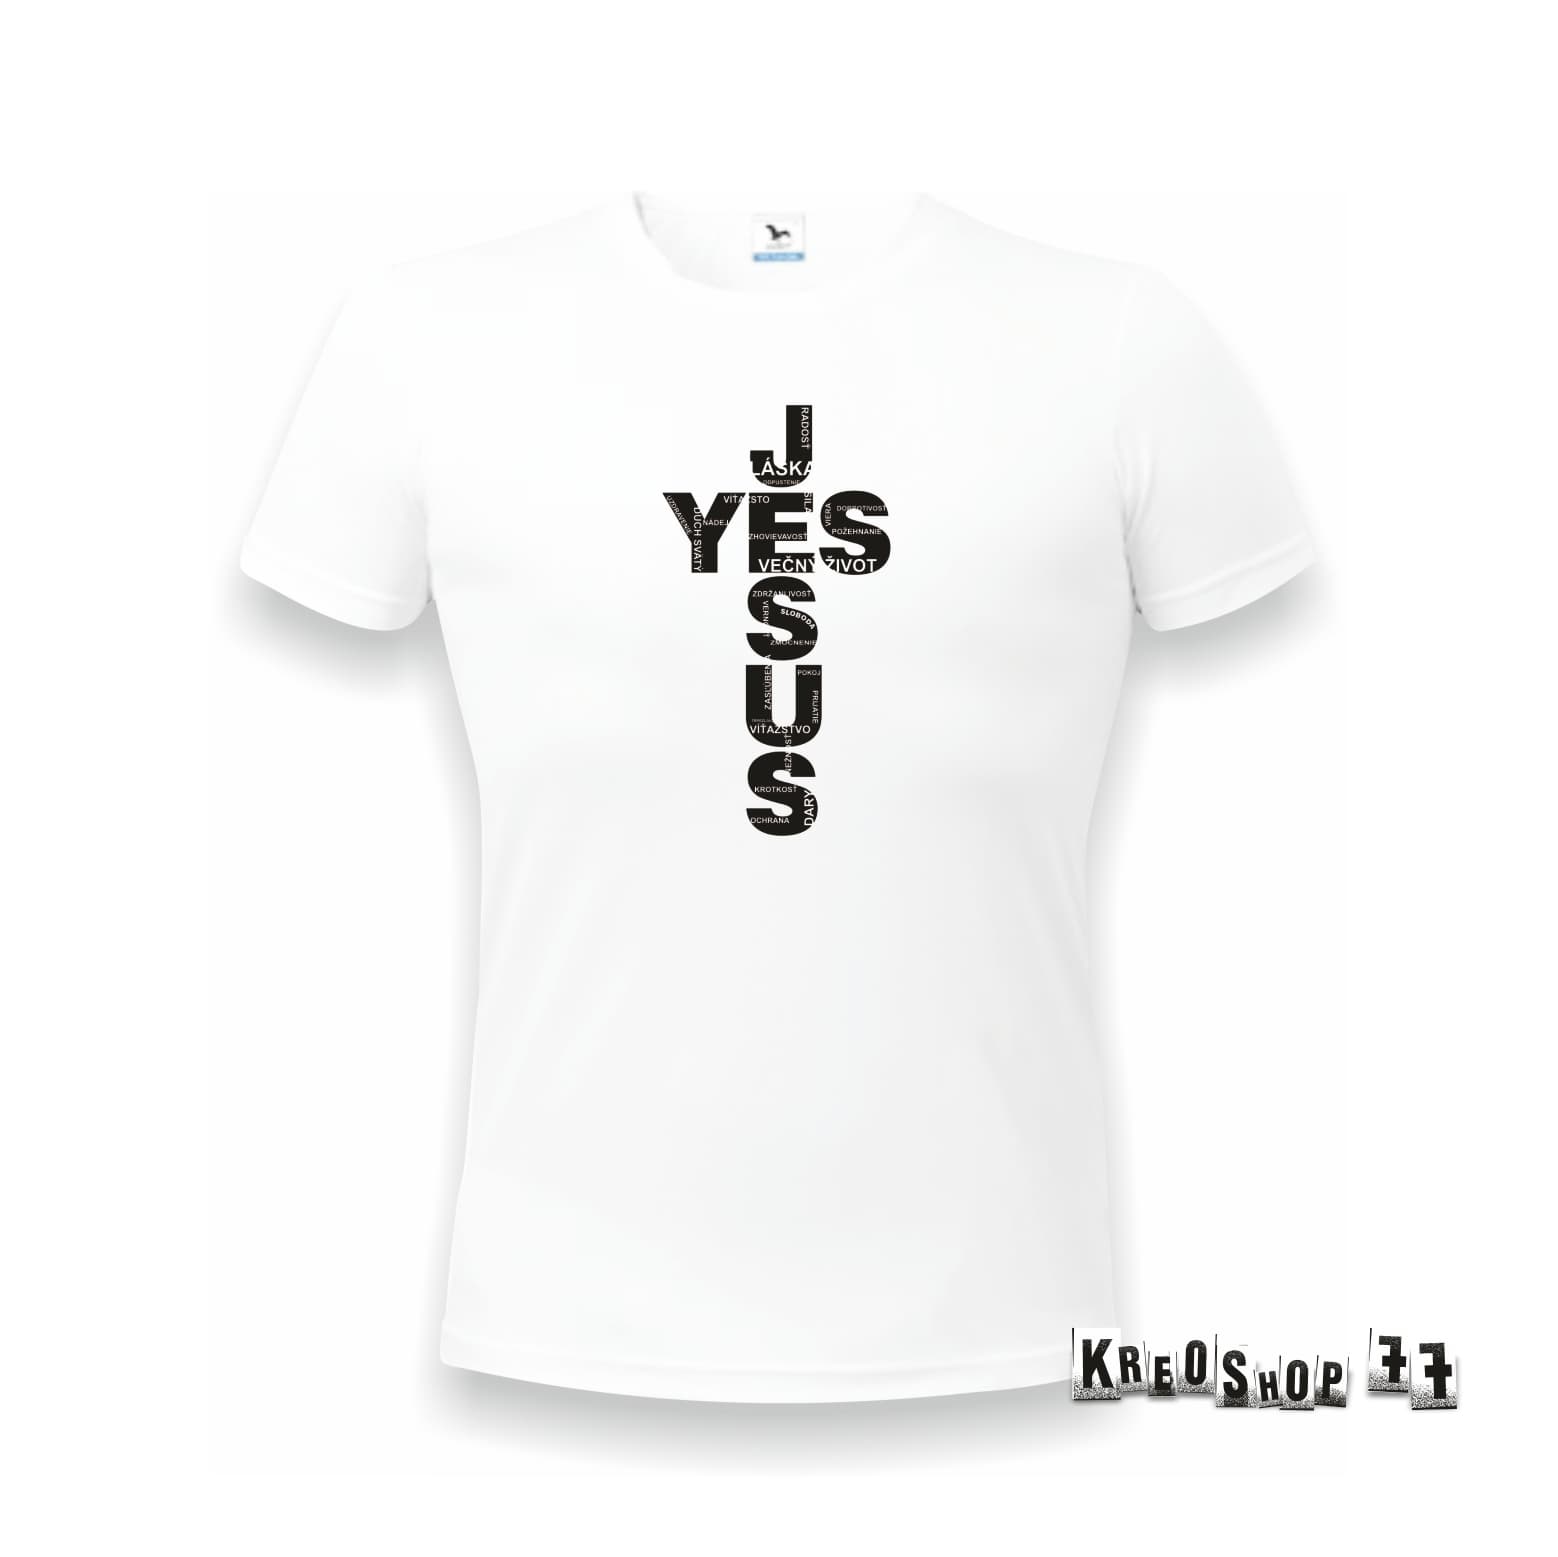 Kresťanské tričko - Yes Jesus - Black